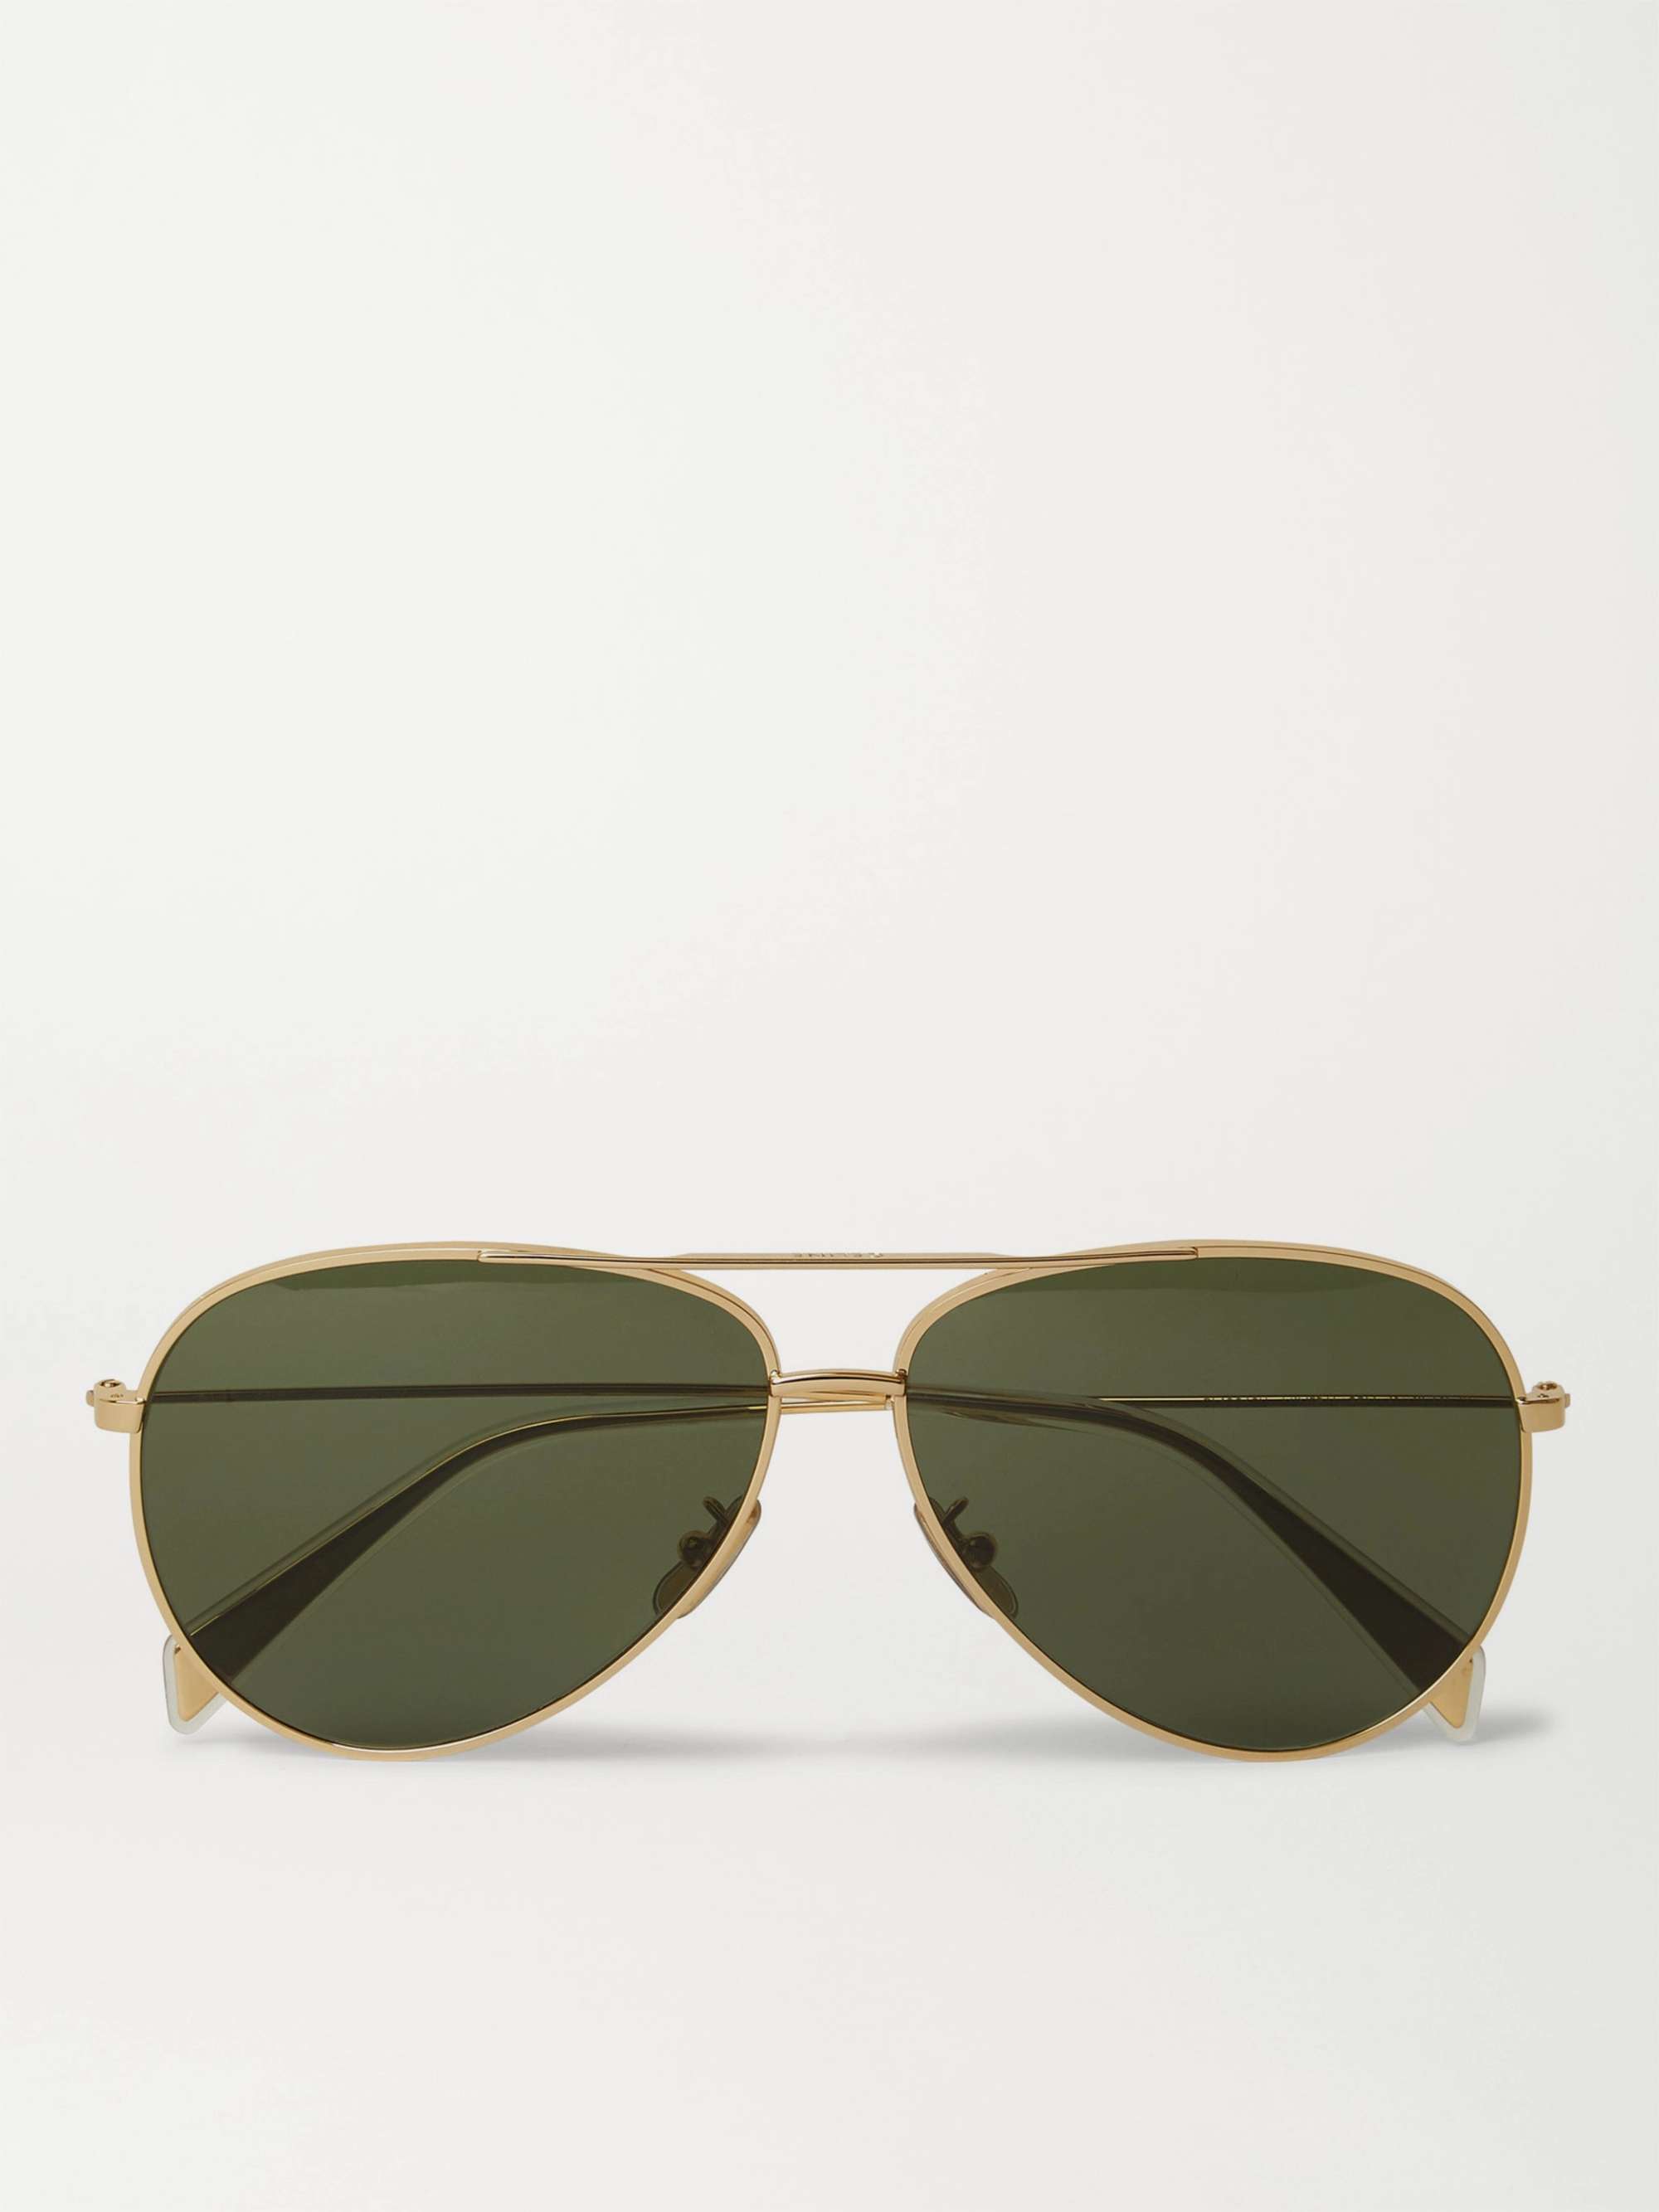 CELINE HOMME Aviator-Style Gold-Tone Sunglasses | MR PORTER